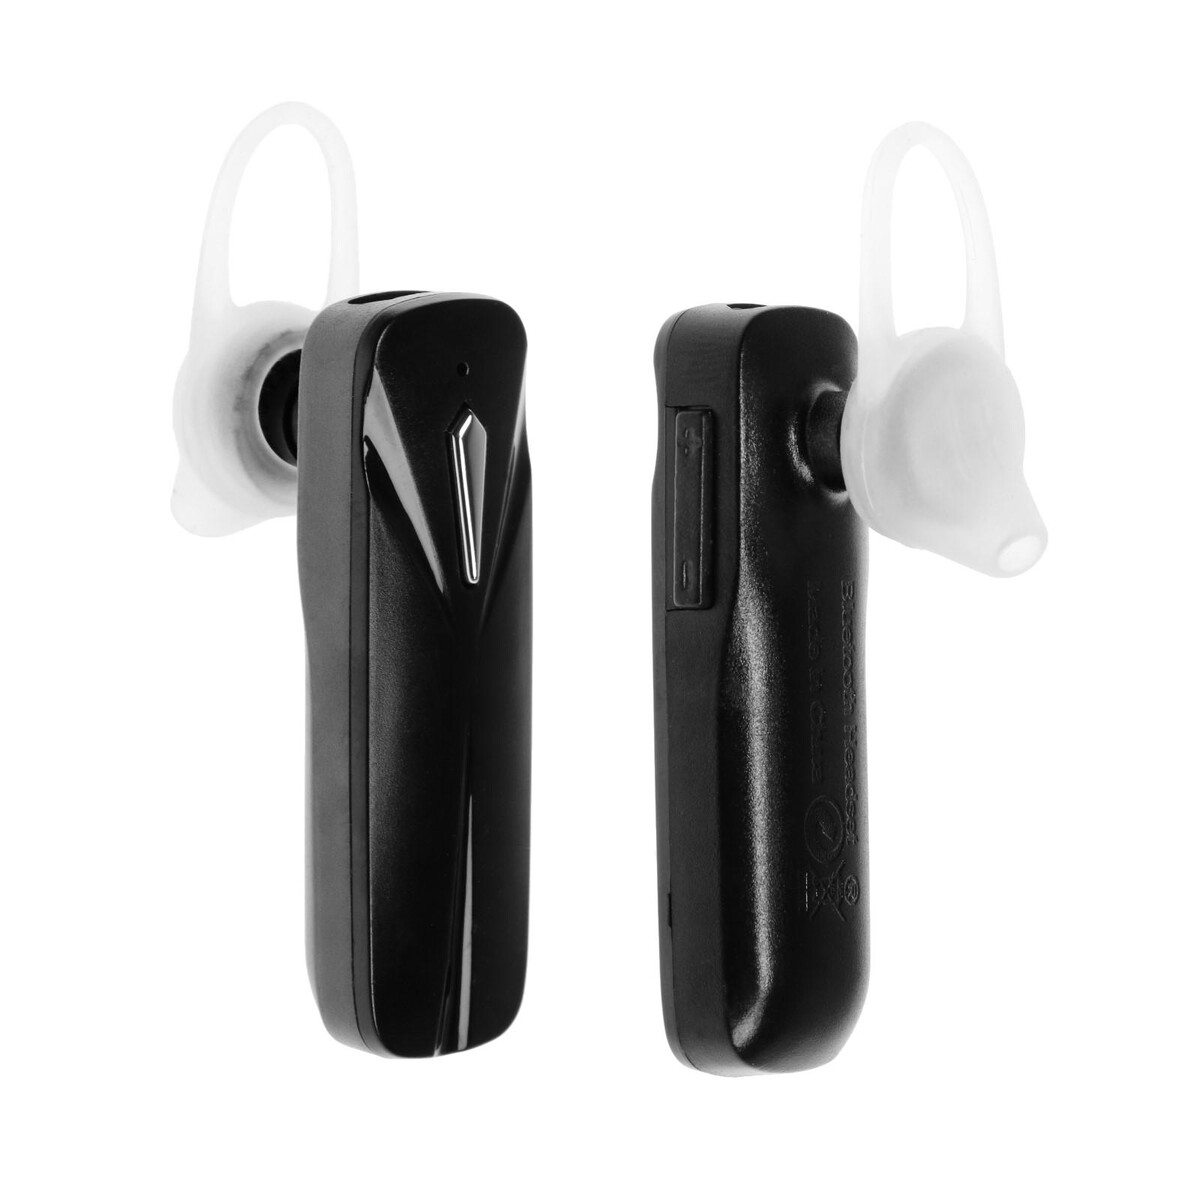 Bluetooth-гарнитура для телефона, w-49, беспроводная, крепление за ухо, черная наушники devia strom series bluetooth red